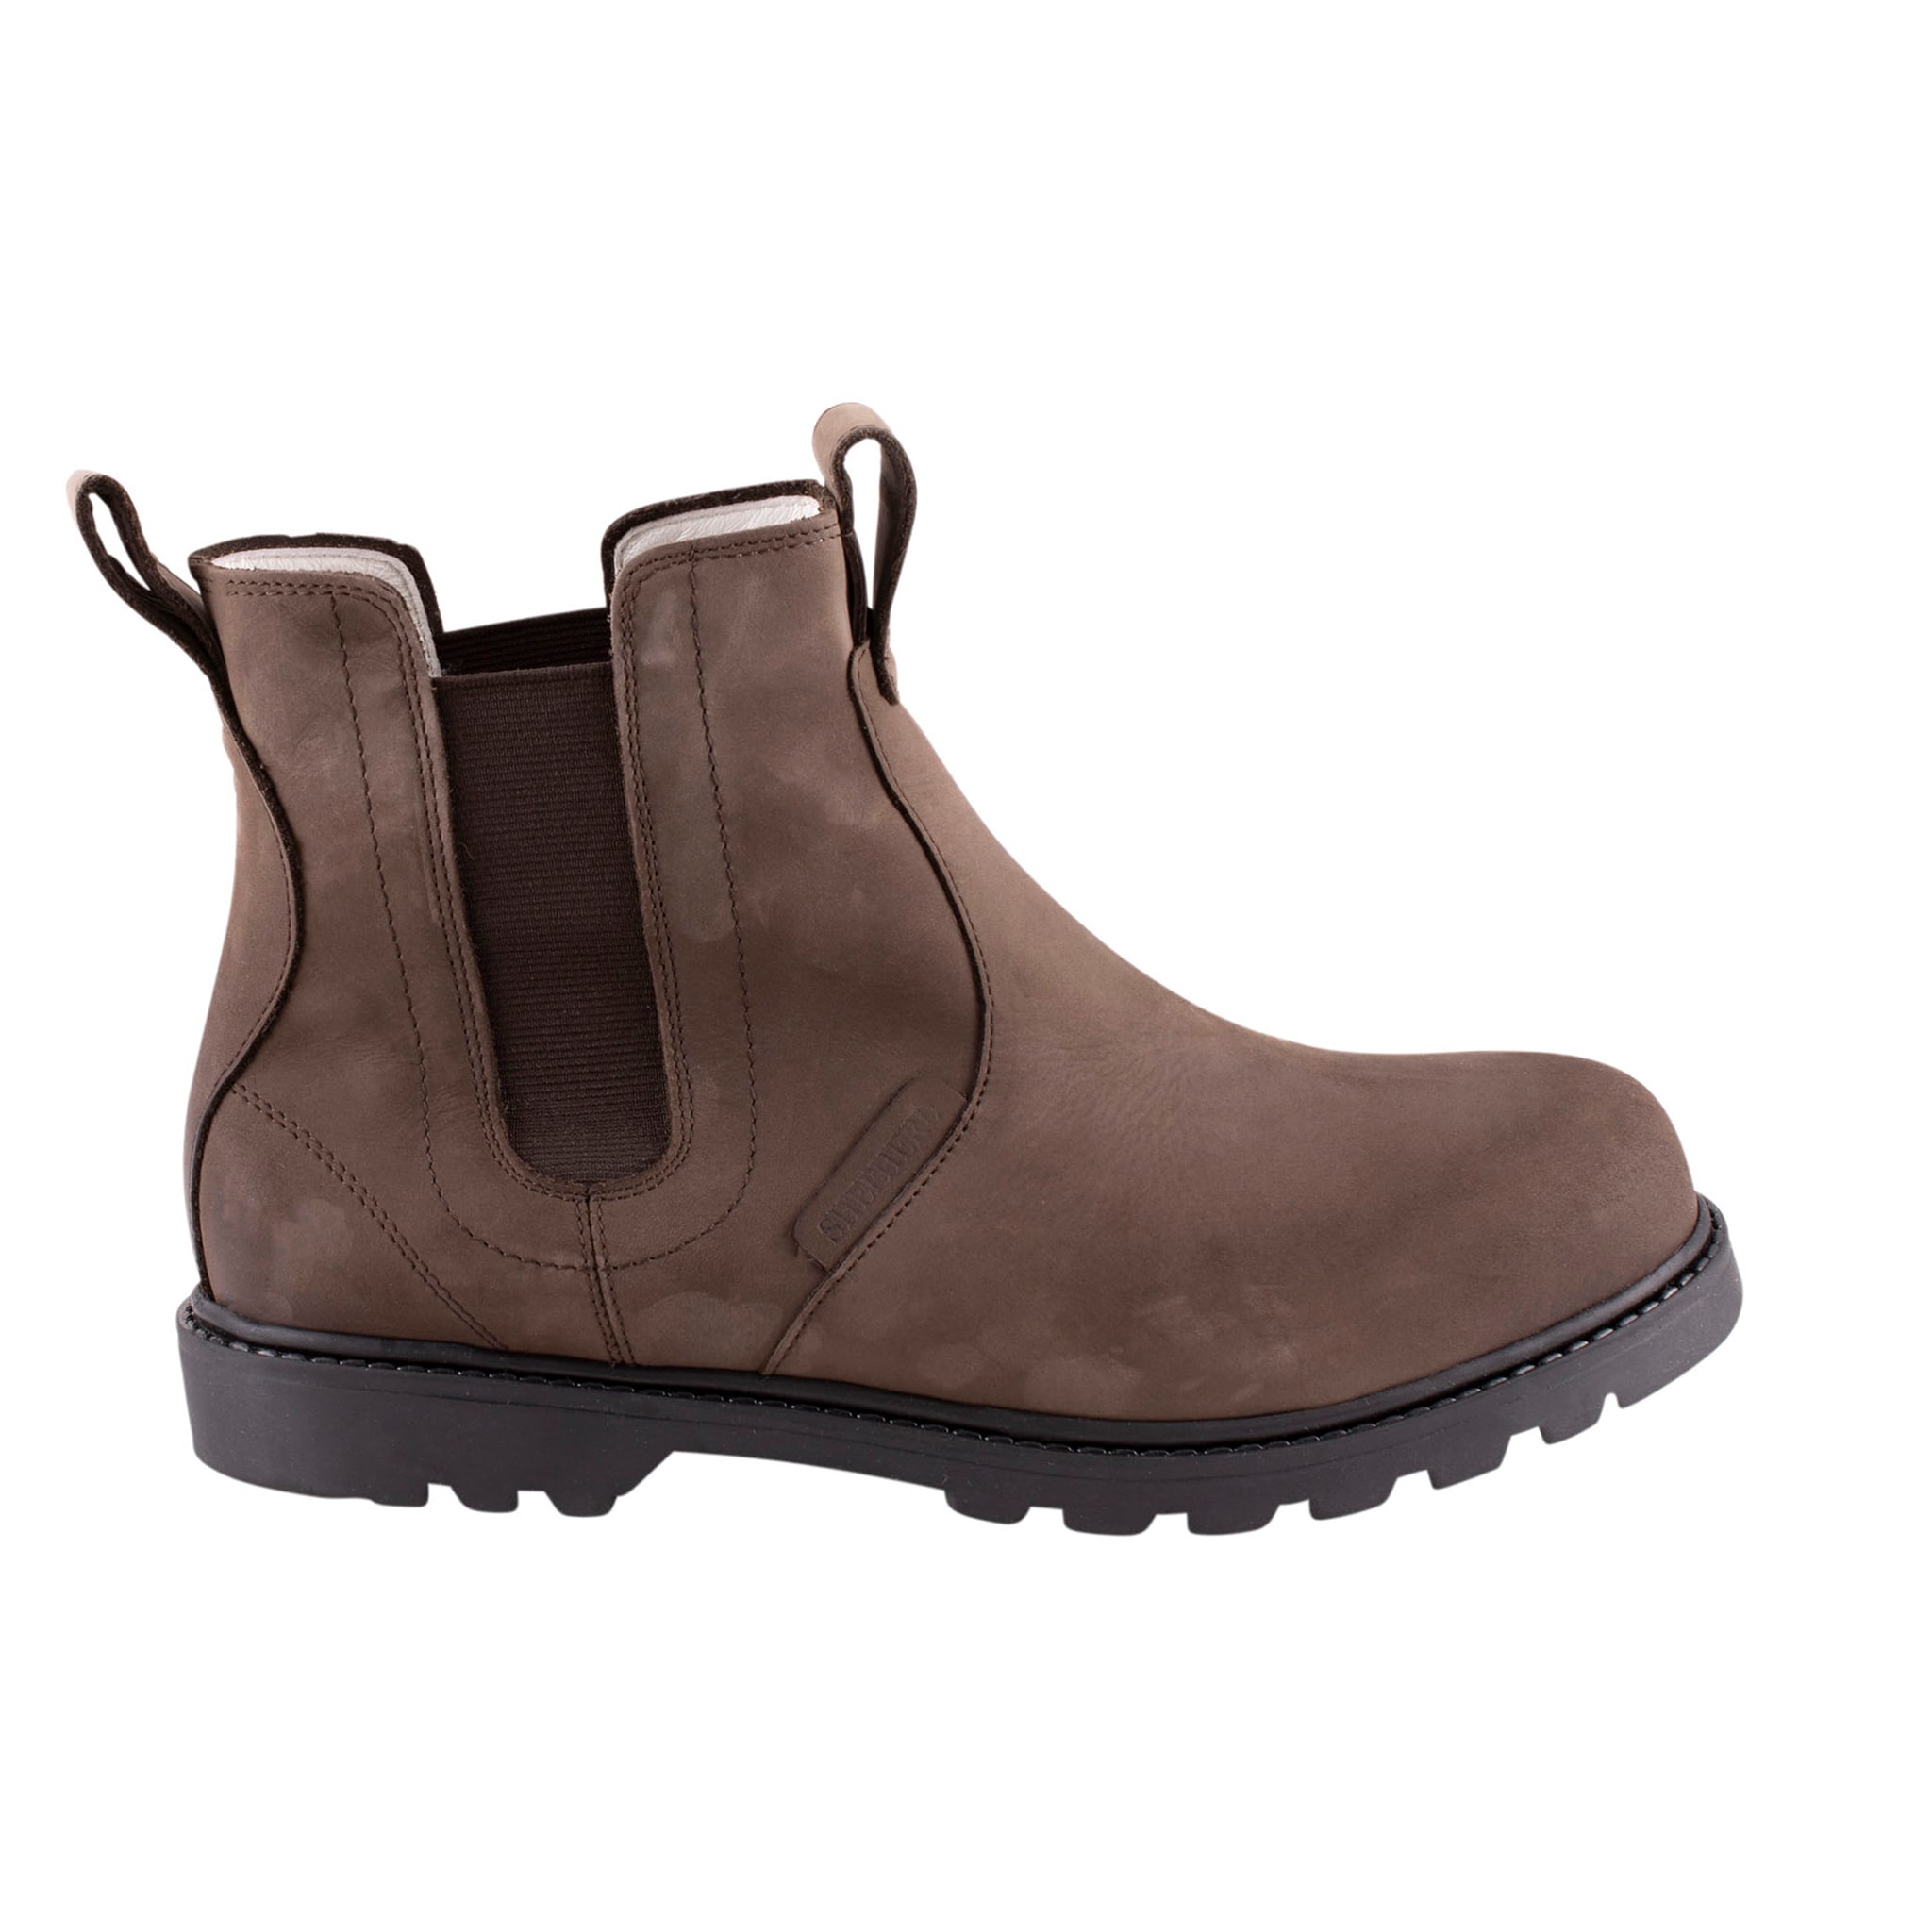 Klas leather boots